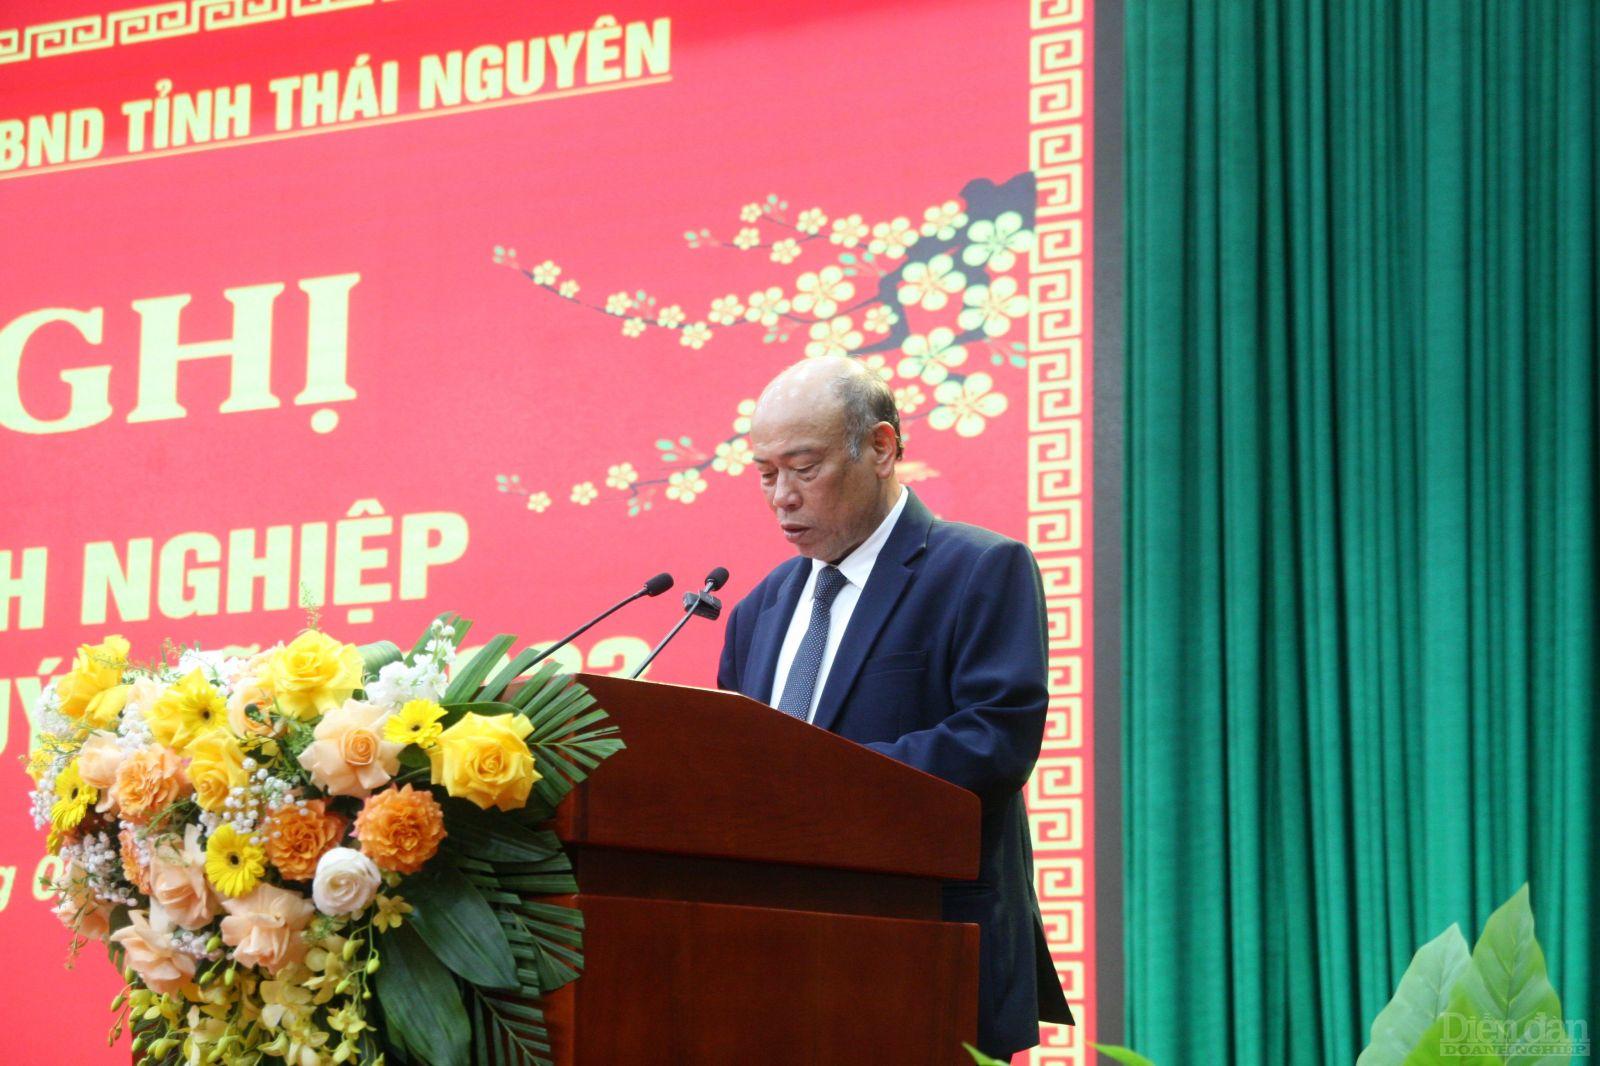 Ông Nguyễn Văn Thời, Chủ tịch HĐQT công ty cổ phần TNG, Chủ tịch Hiệp hội doanh nghiệp tỉnh Thái Nguyên